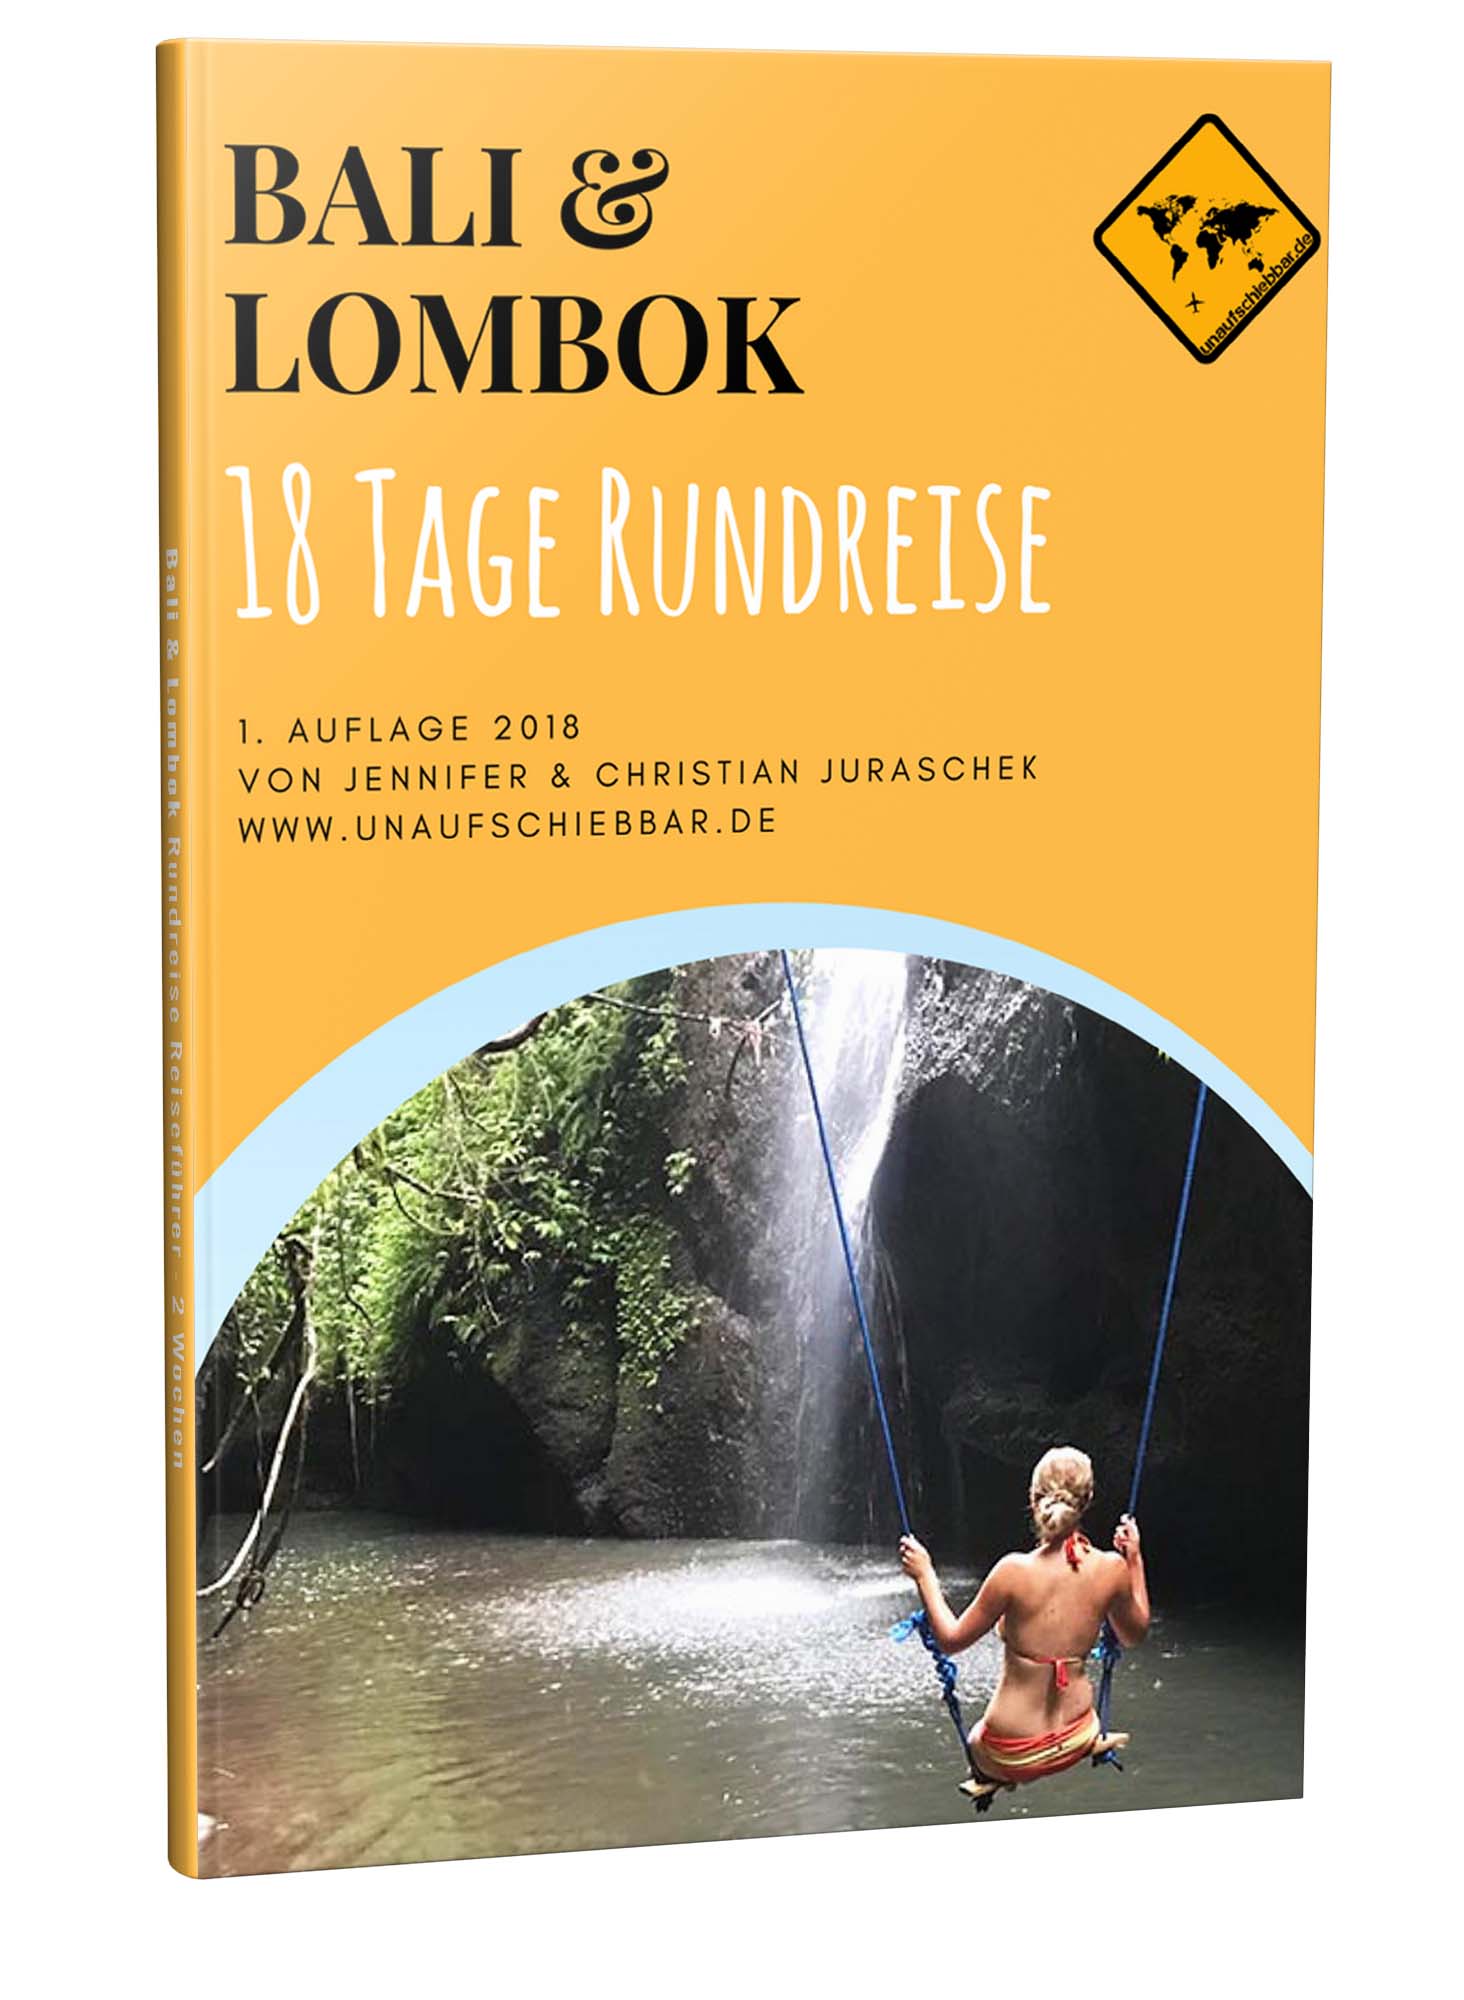 Bali Lombok Rundreise Reiseführer für 18 Tage